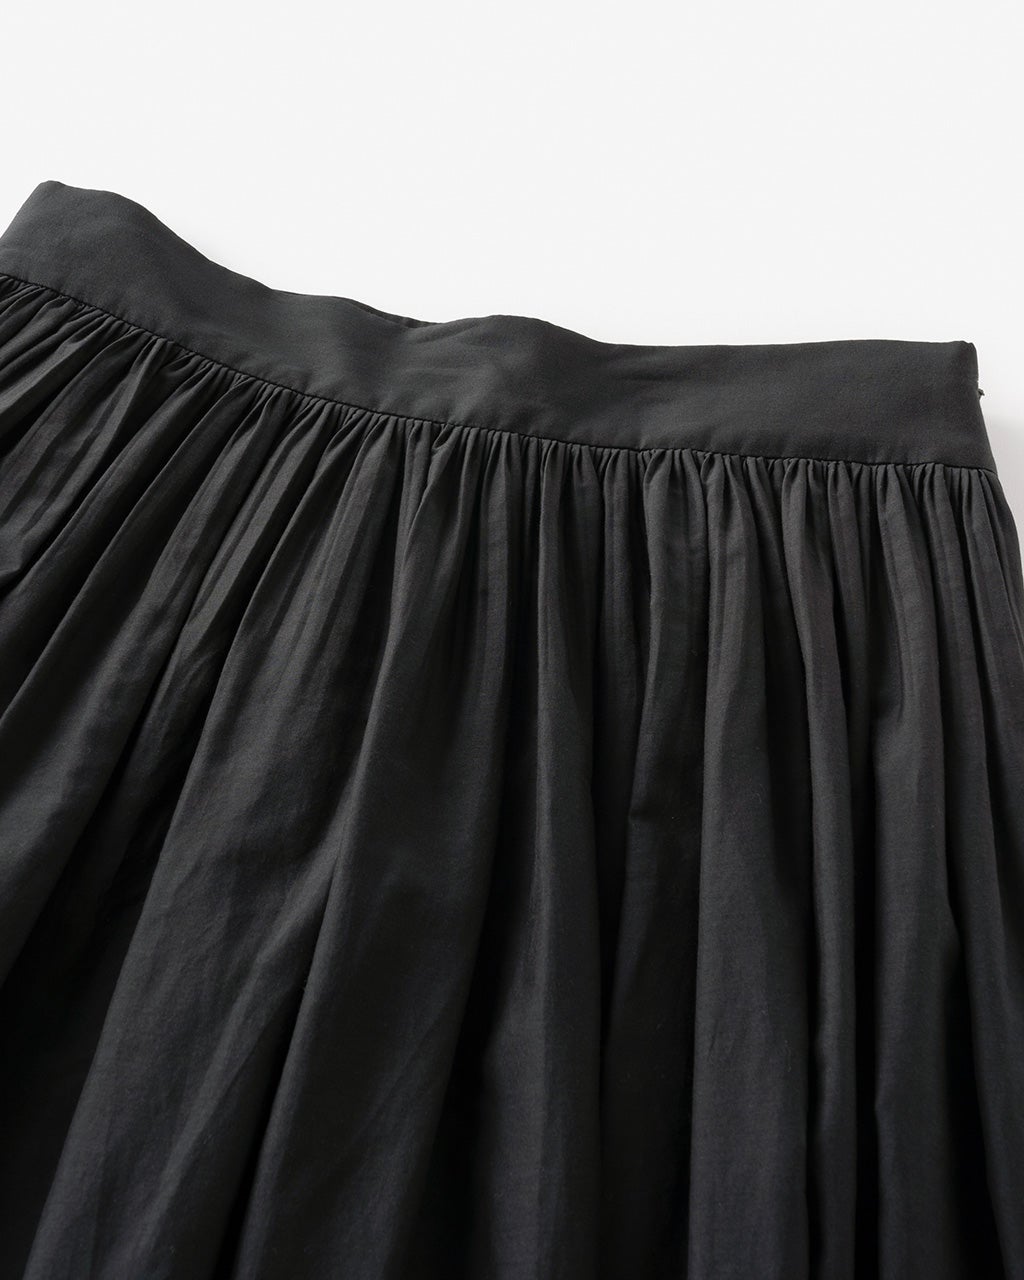 ◎カラー…黒【新品タグ付き】シルク100%ティアード フレアスカート 黒 